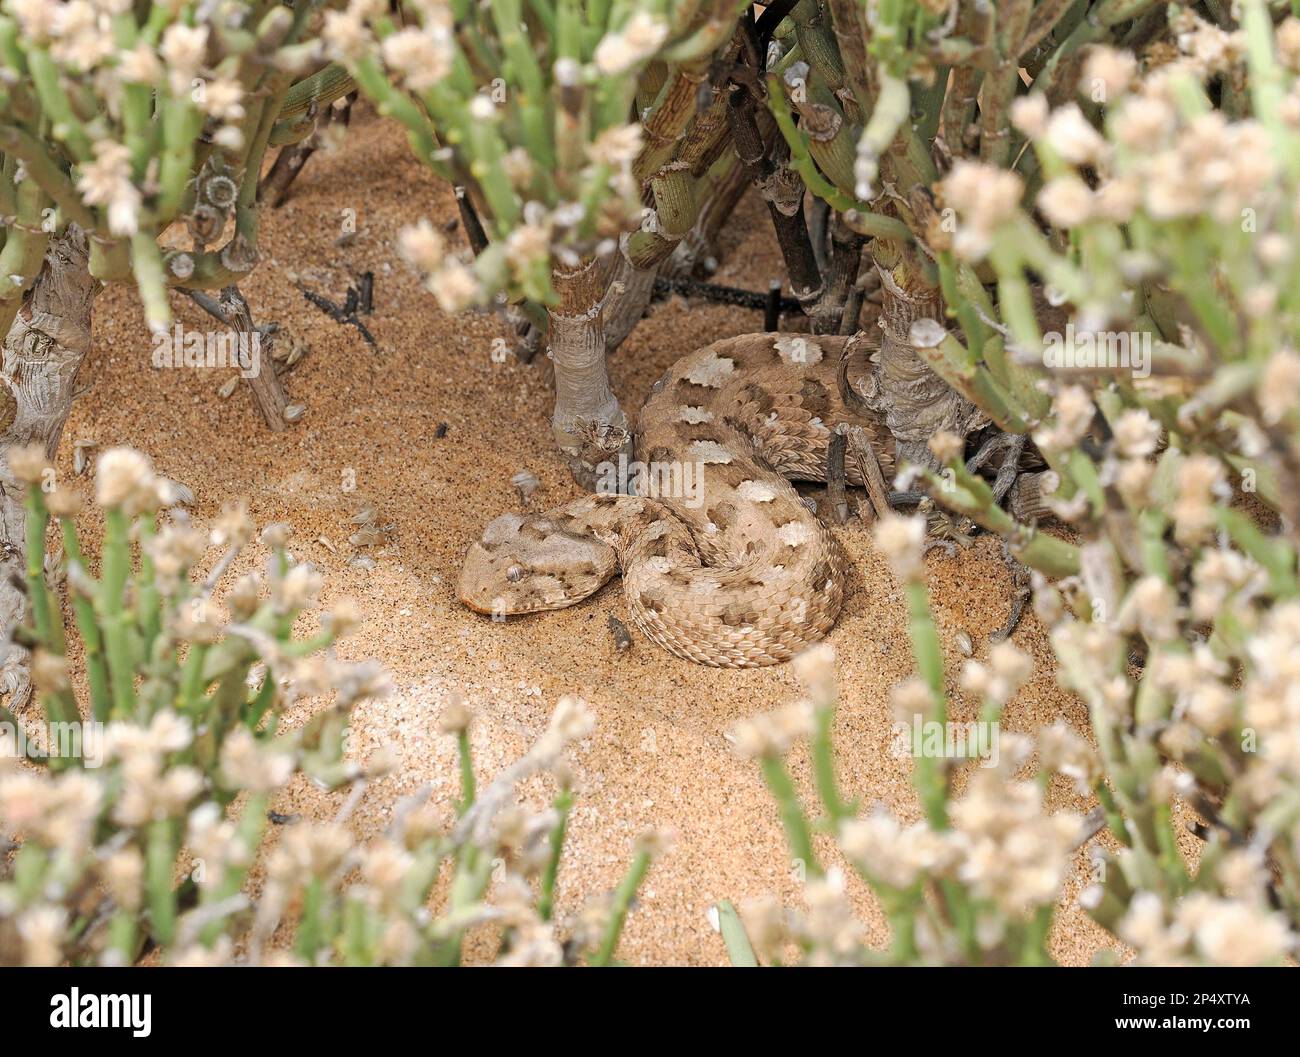 Horned Adder Snake (Bitis caudalis) in der Vegetation der Sanddünen, Namibia, Januar Stockfoto